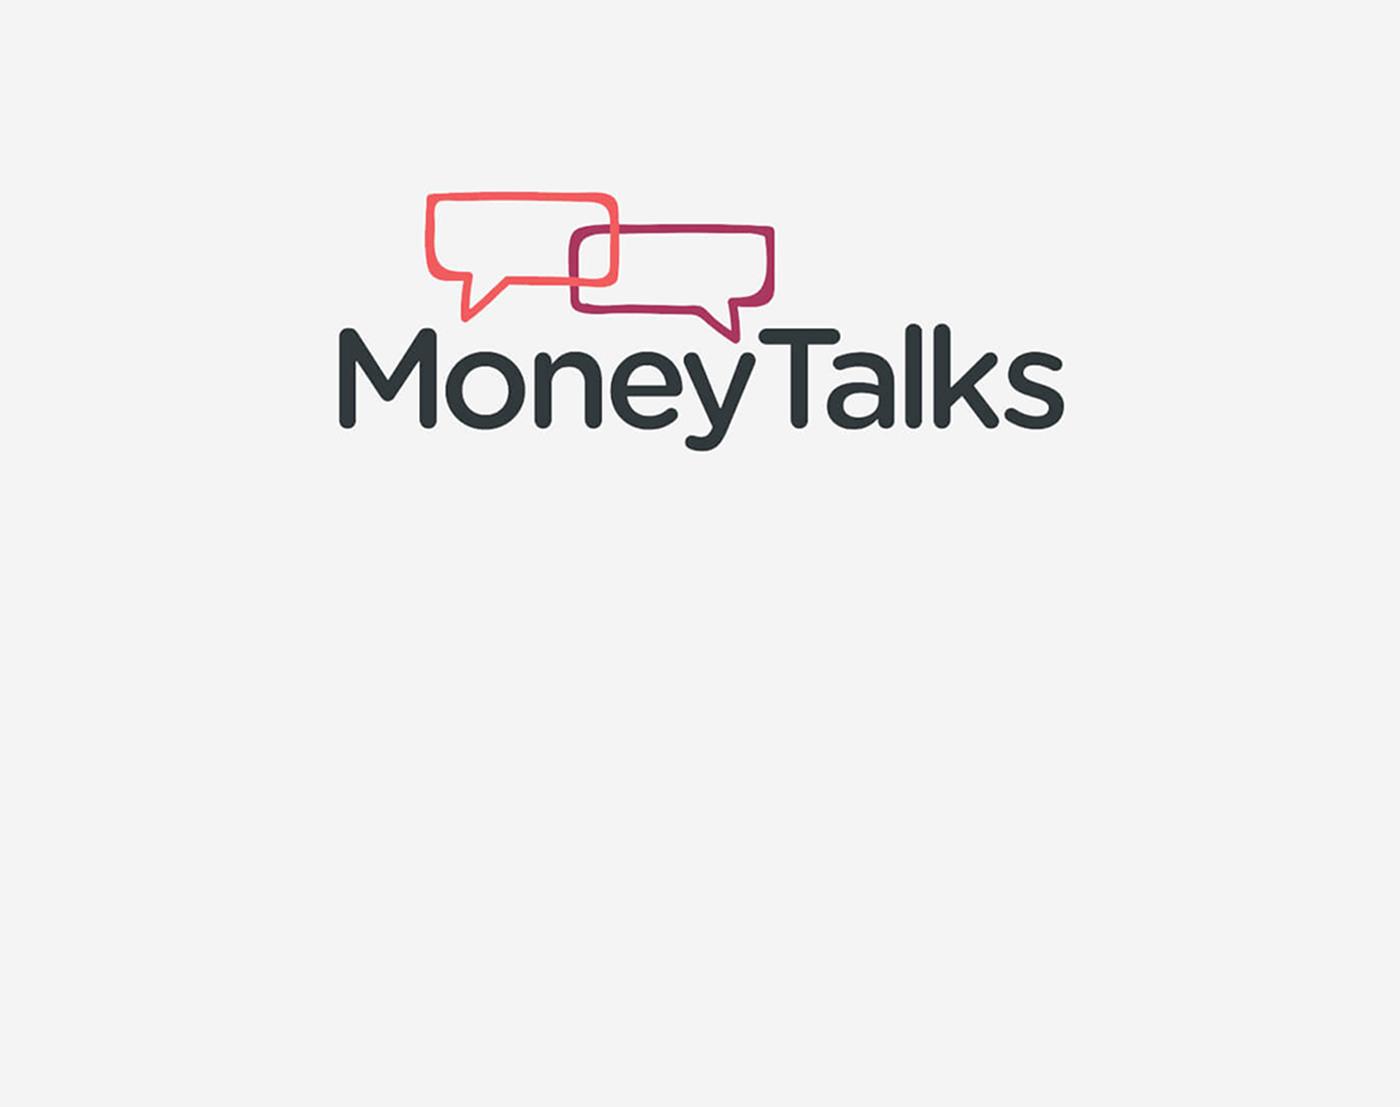 Money talks logo